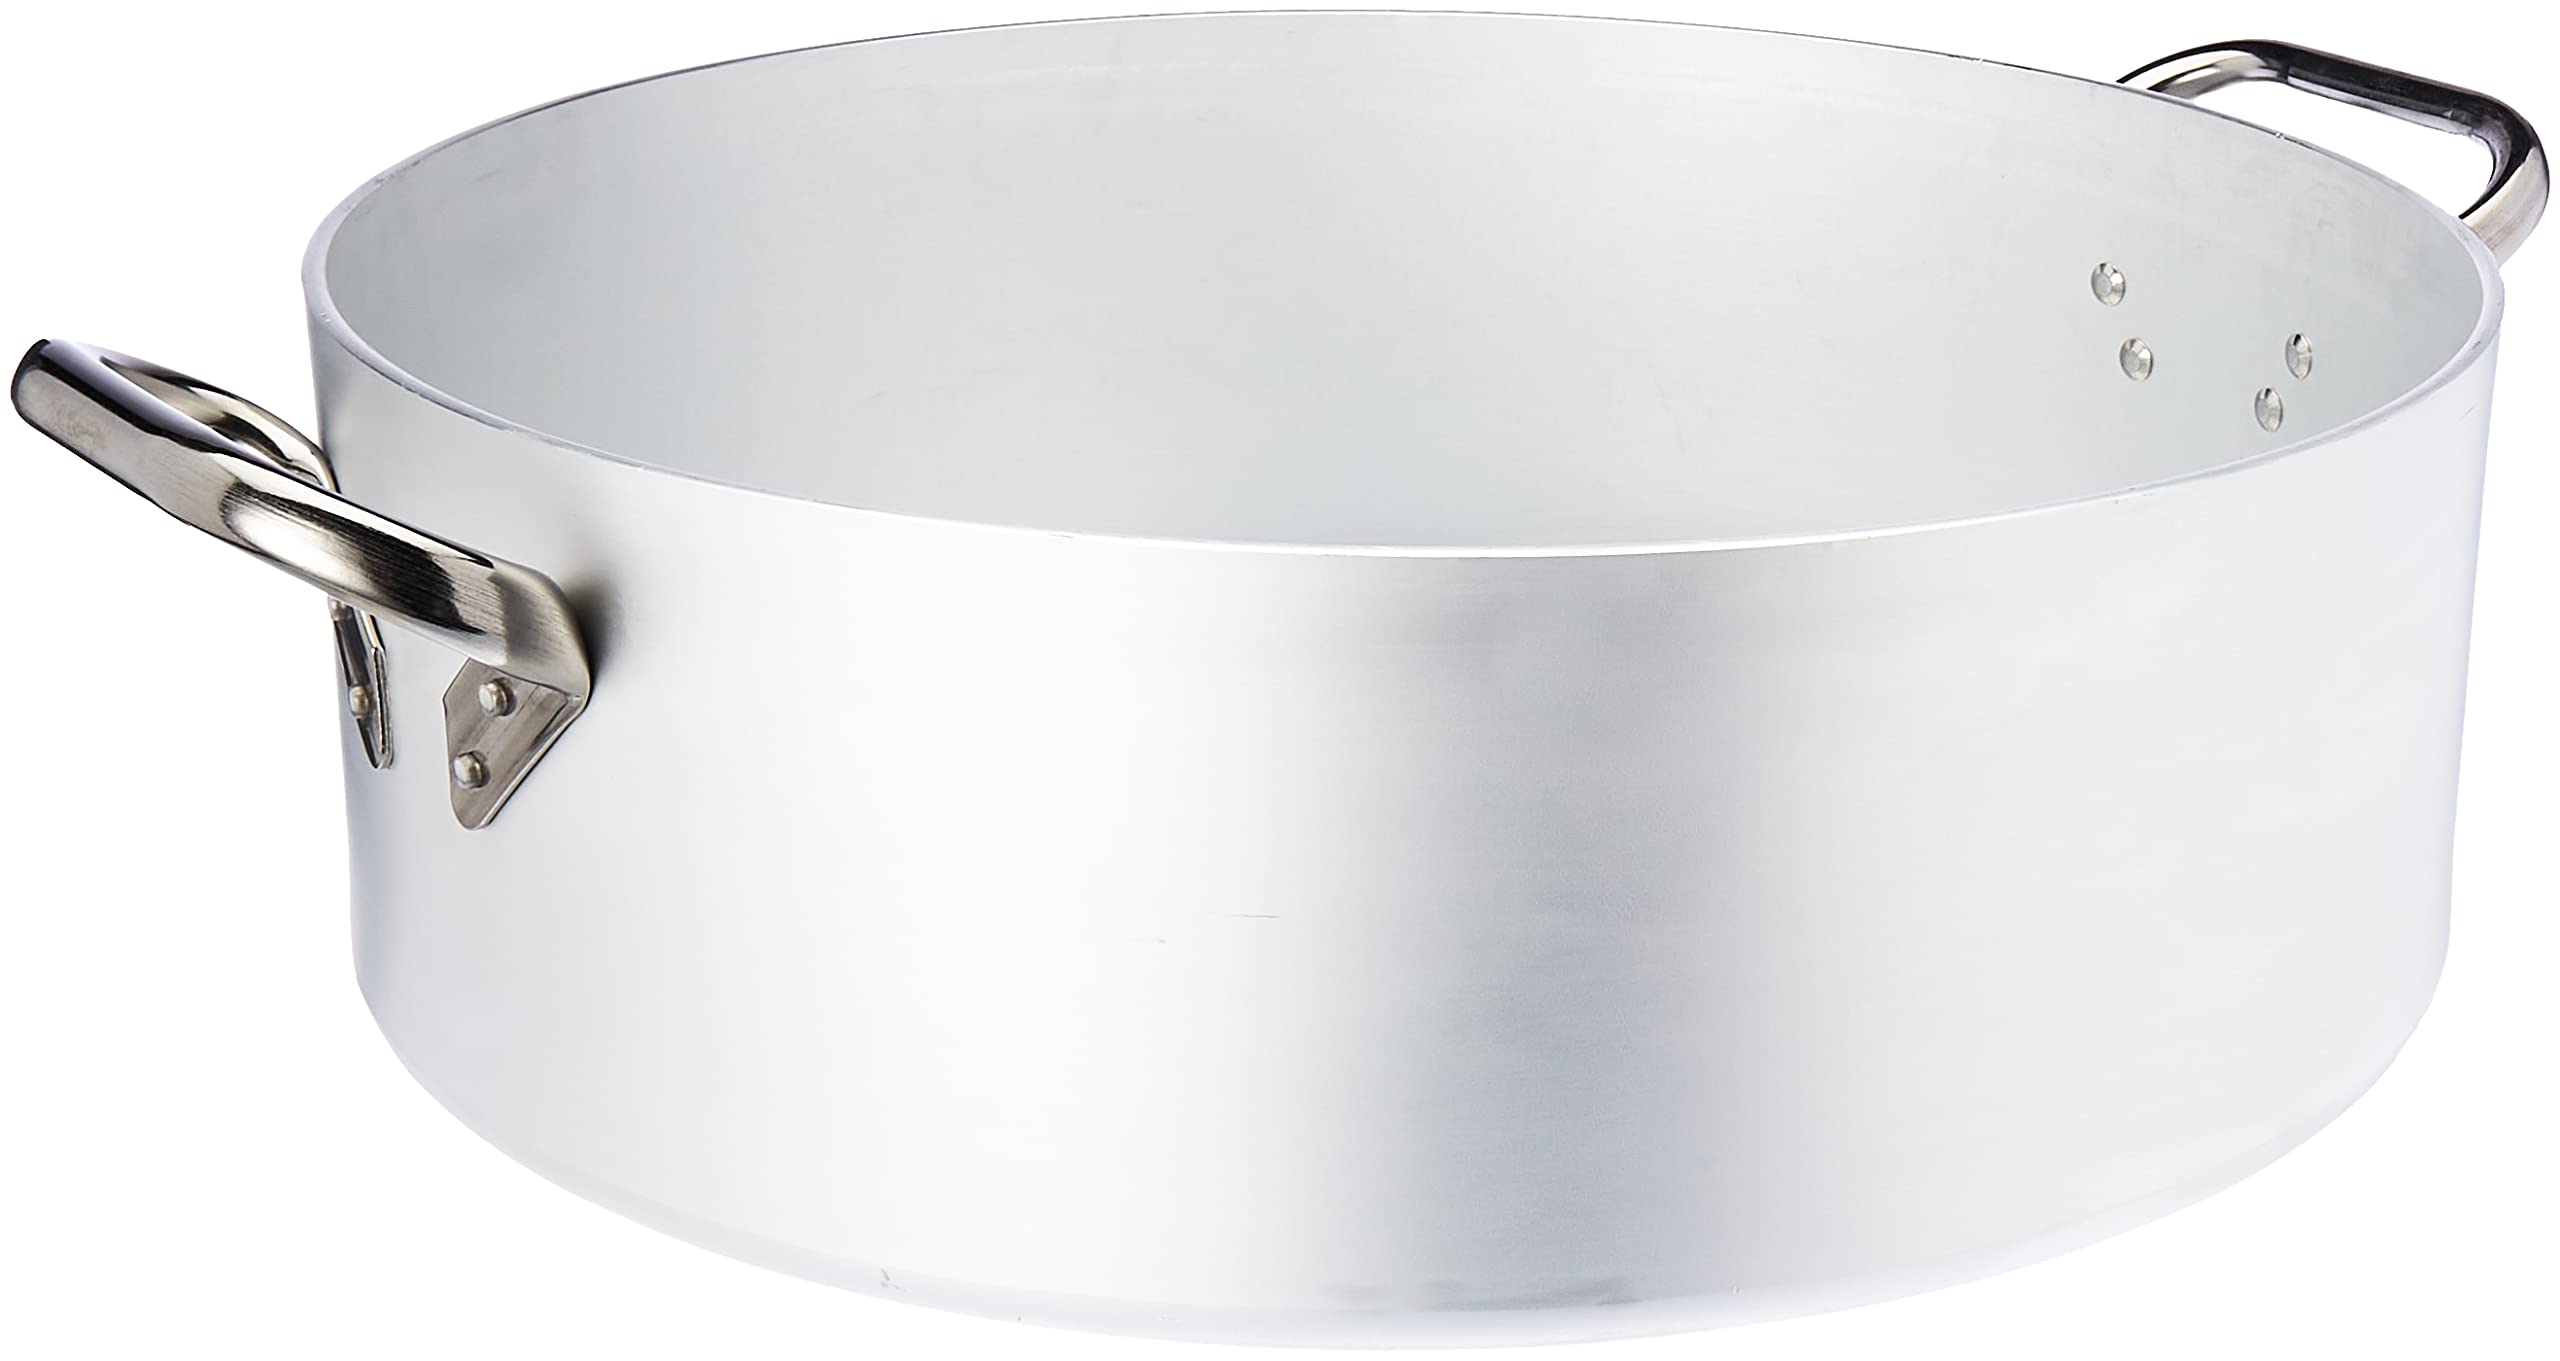 Pentole Agnelli Kasserolle zylinderförmig, langsame, Strahlentherapie, aus Aluminium, Dicke 5 mm, mit 2 Griffen aus Edelstahl, Silber 50 cm